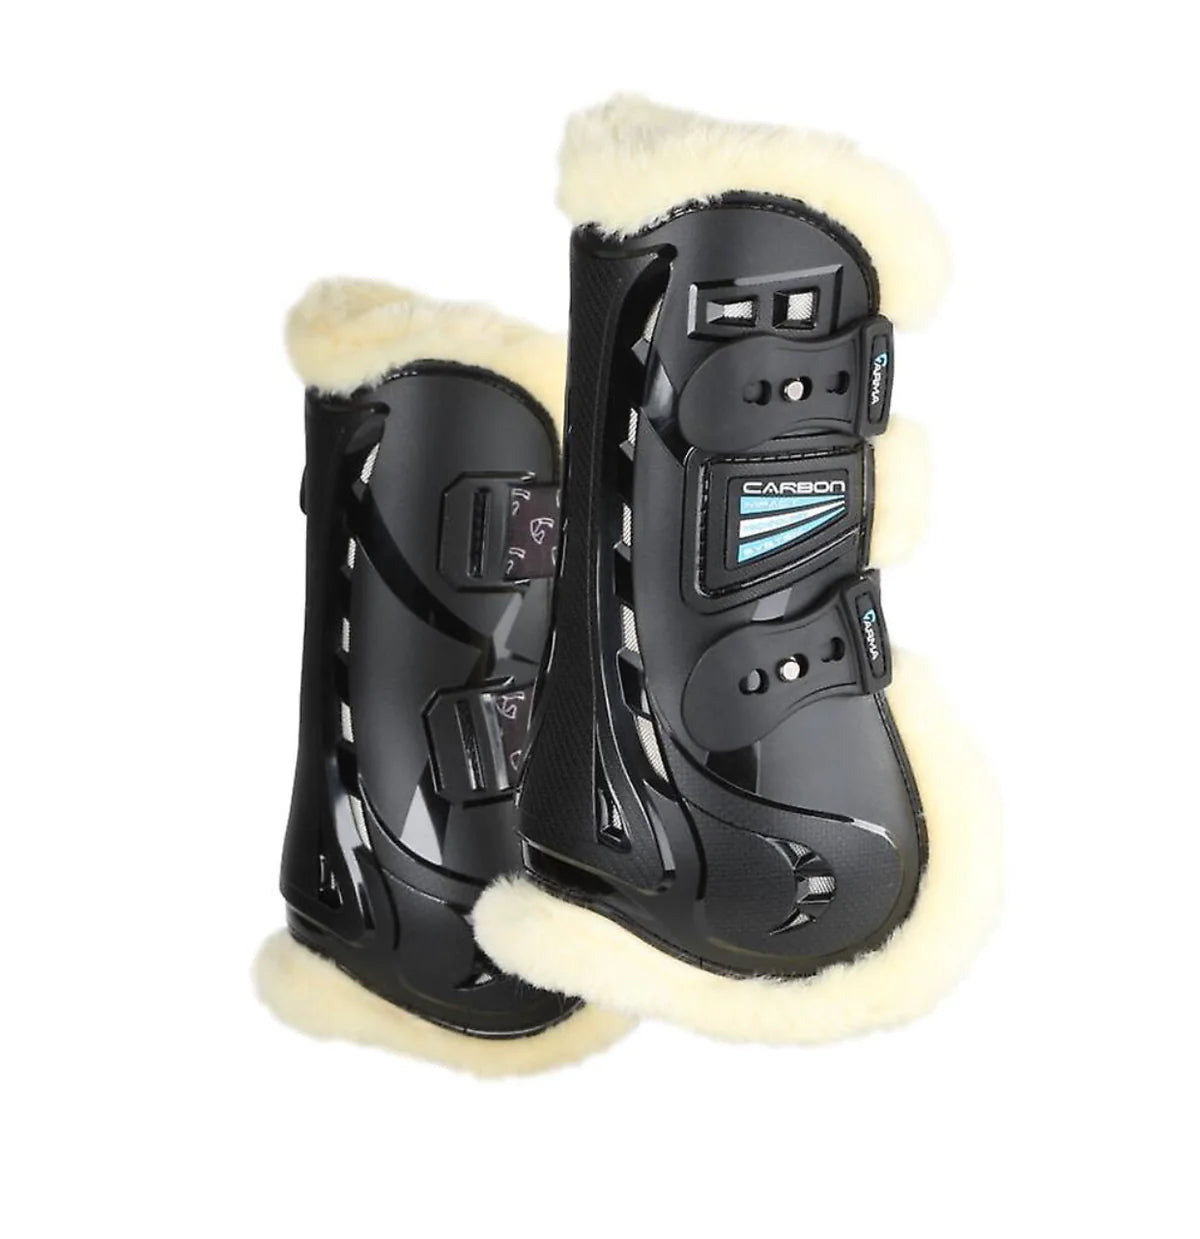 Arma carbon supafleece tendon boots – Crazy Carousel